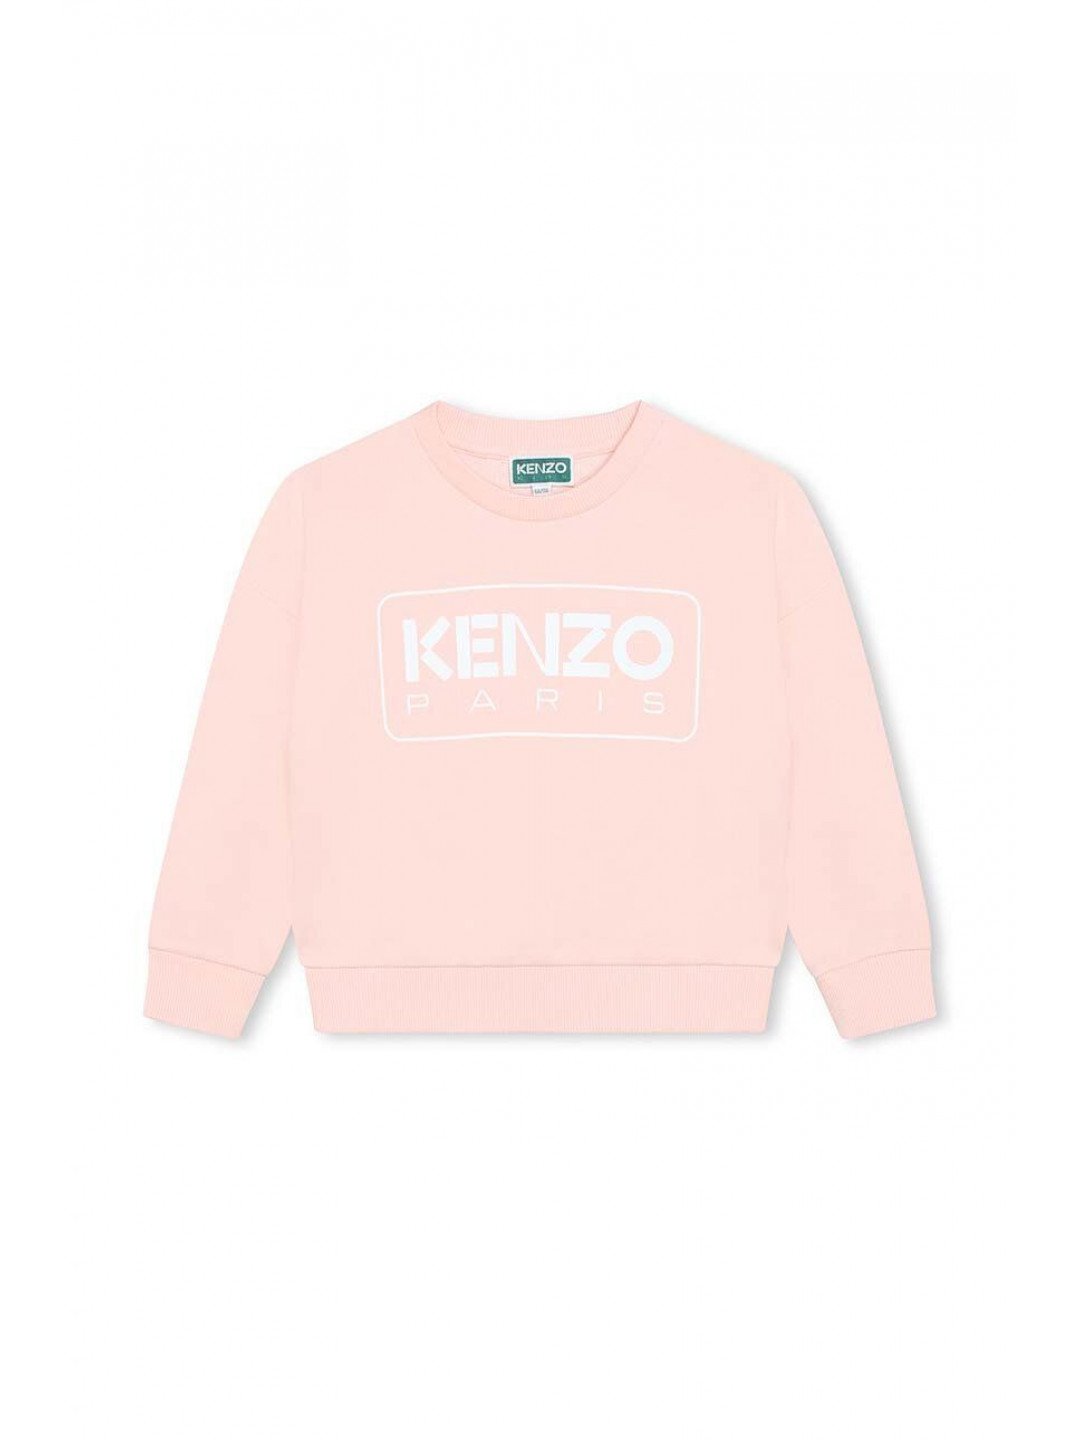 Dětská bavlněná mikina Kenzo Kids růžová barva s potiskem